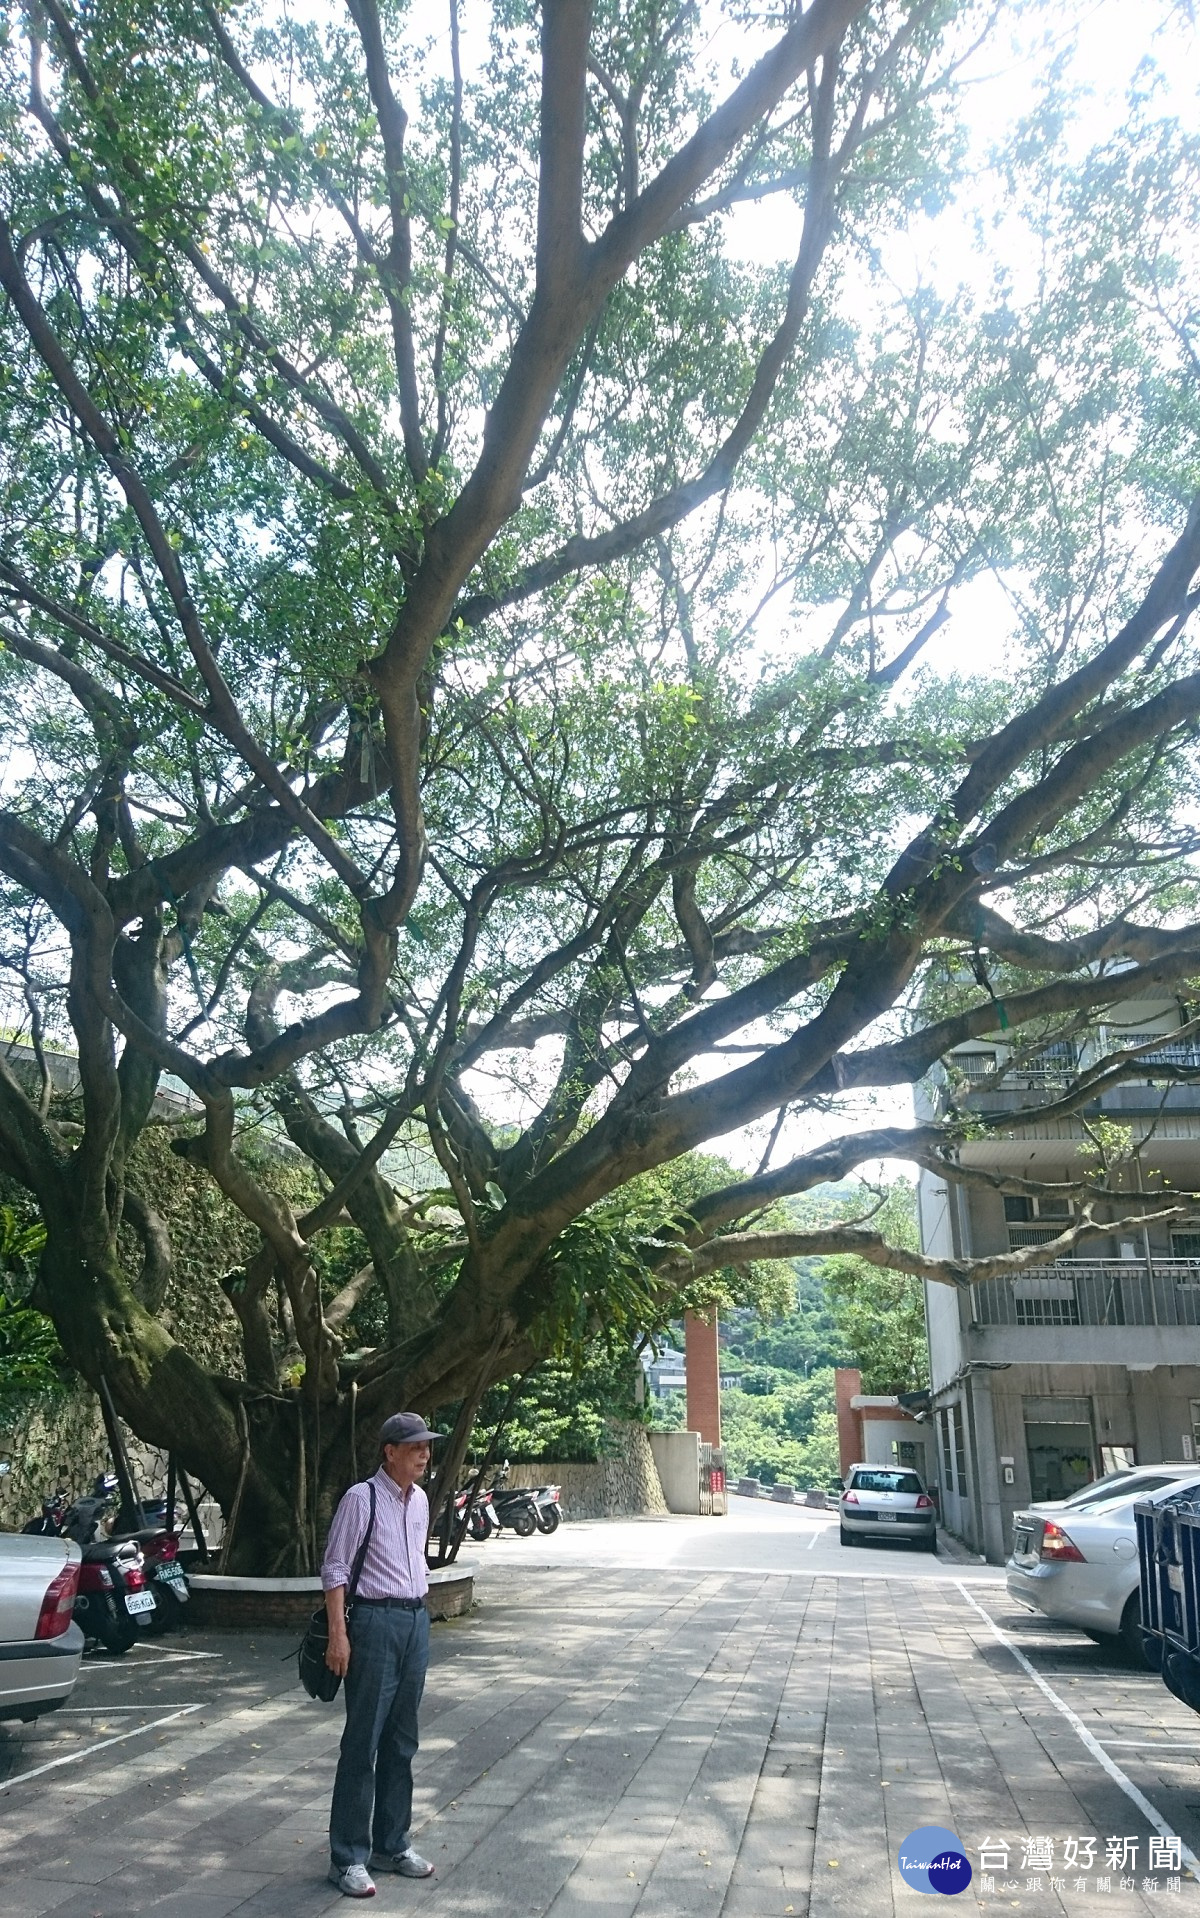 共-83歲的畠中爺爺回到當年的校園，看見記憶中庭園裡的小榕樹已經變成大樹，笑著說自己老了許多